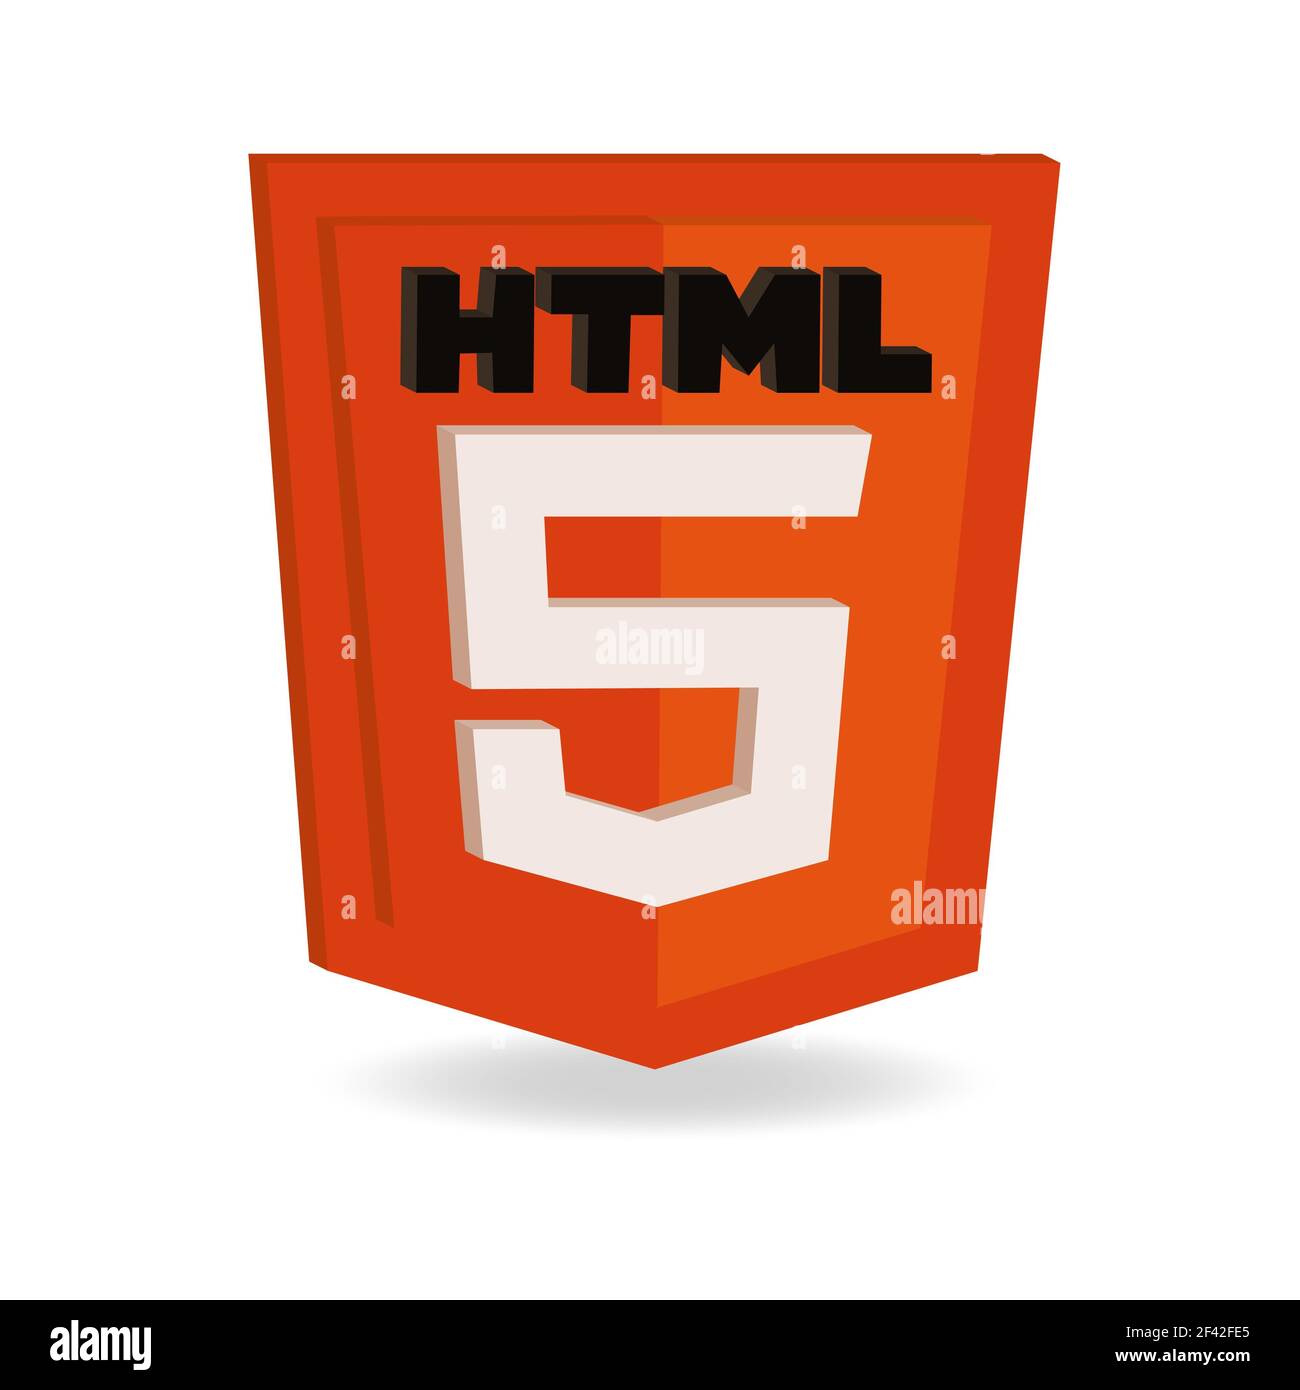 Orange 3d html5 icon isolated on white background. Stock Photo